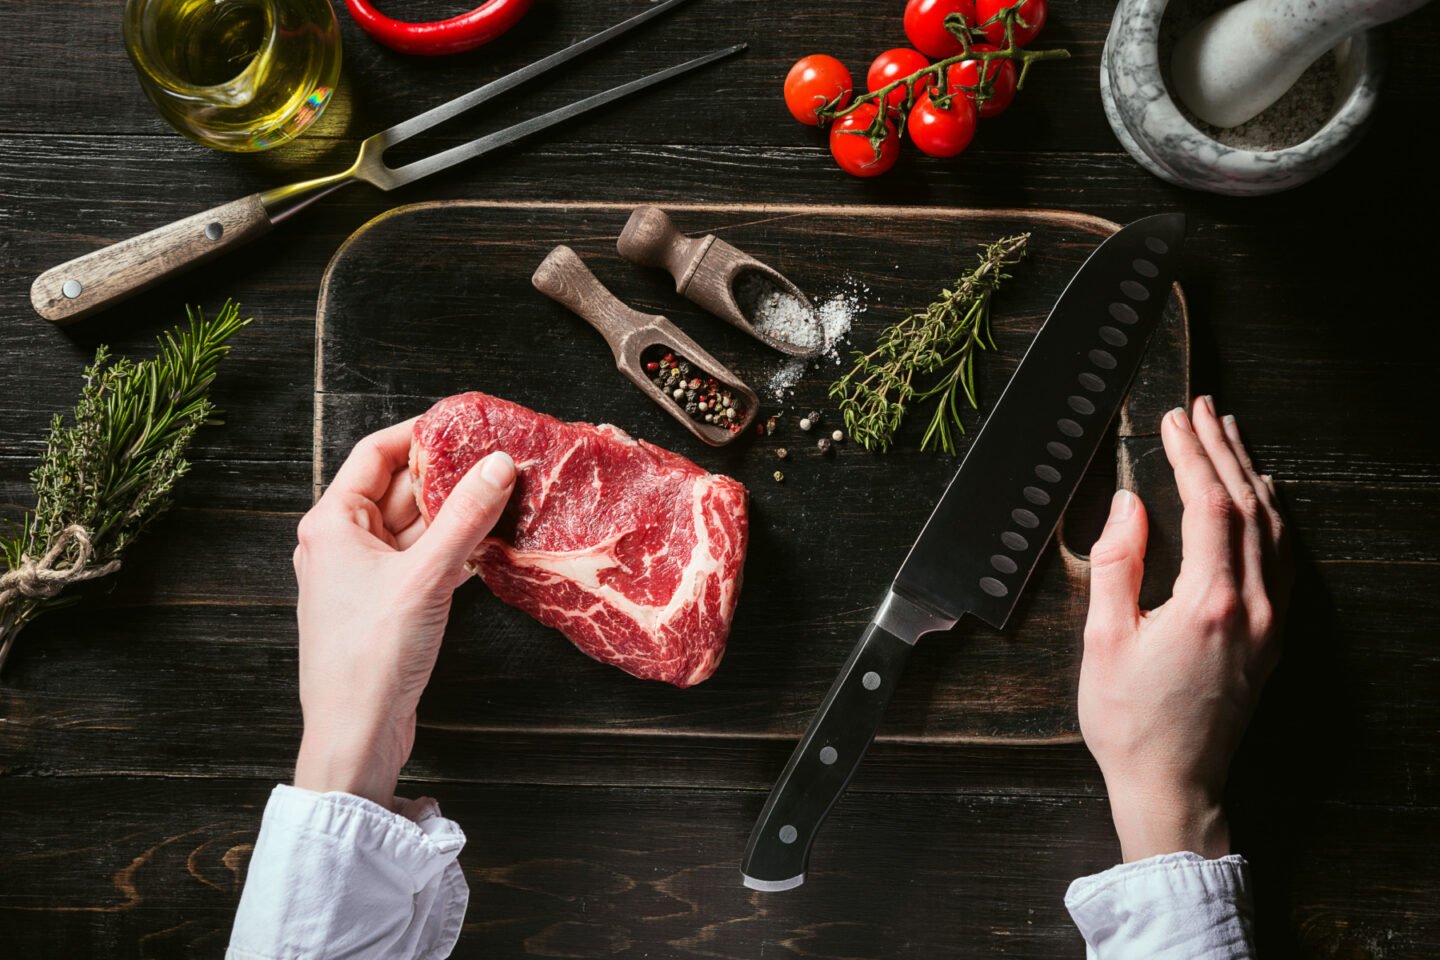 chef prepares rib eye steak